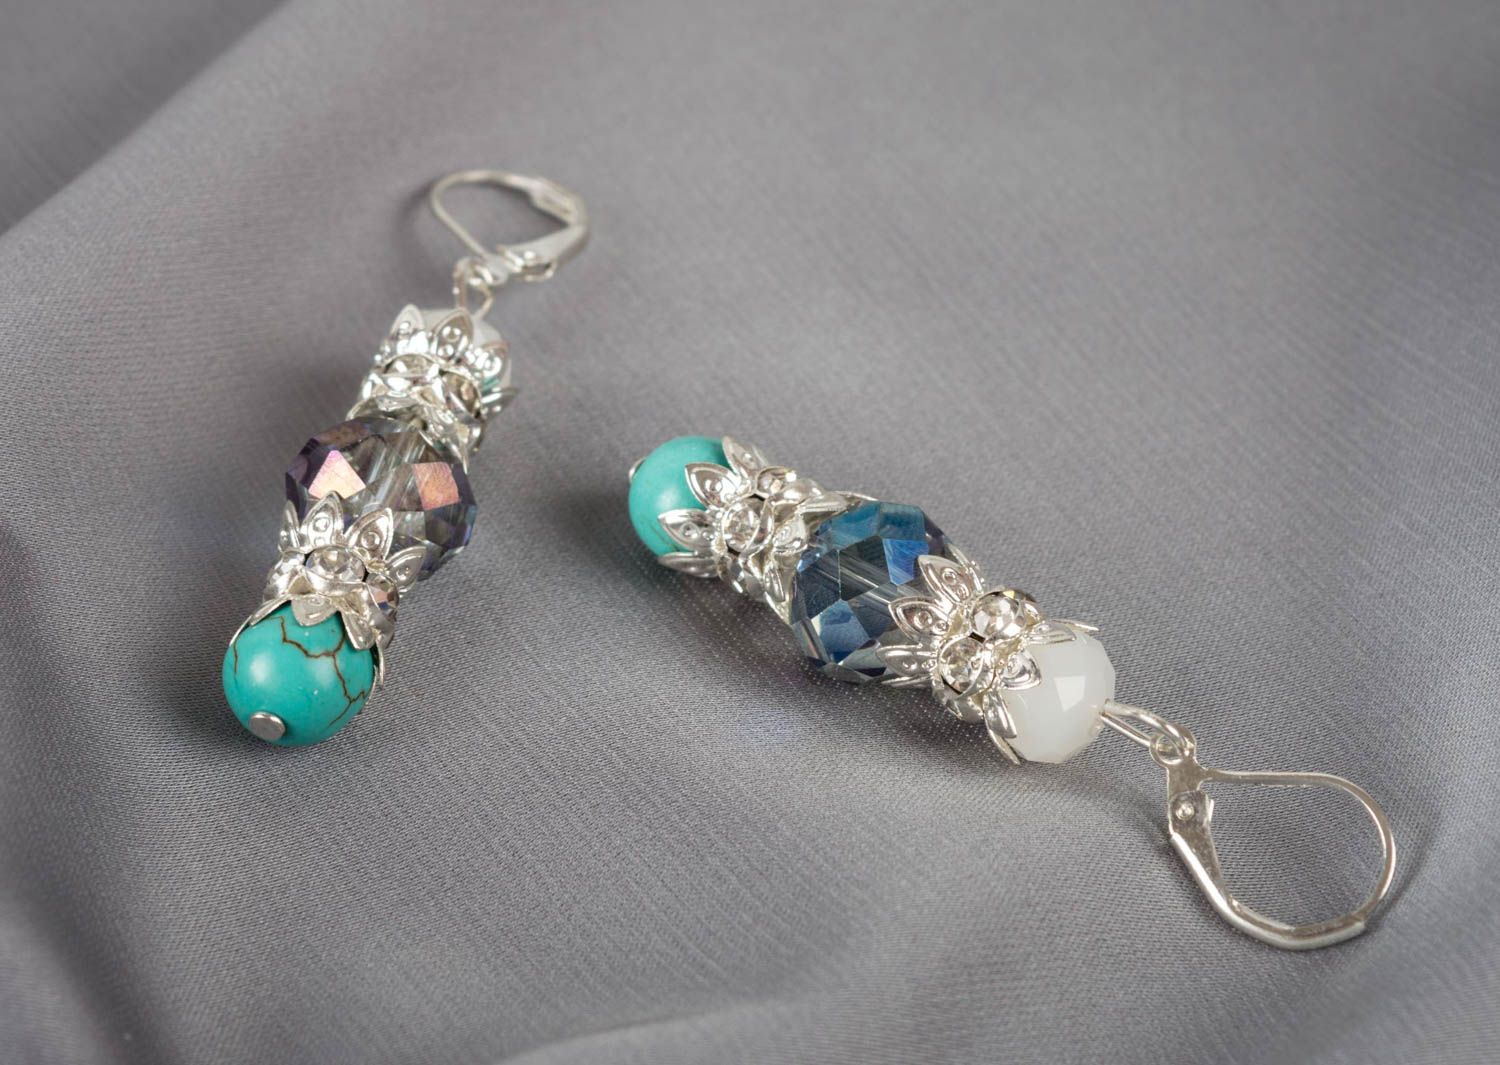 Small handmade gemstone earrings designer crystal earrings gifts for her photo 1